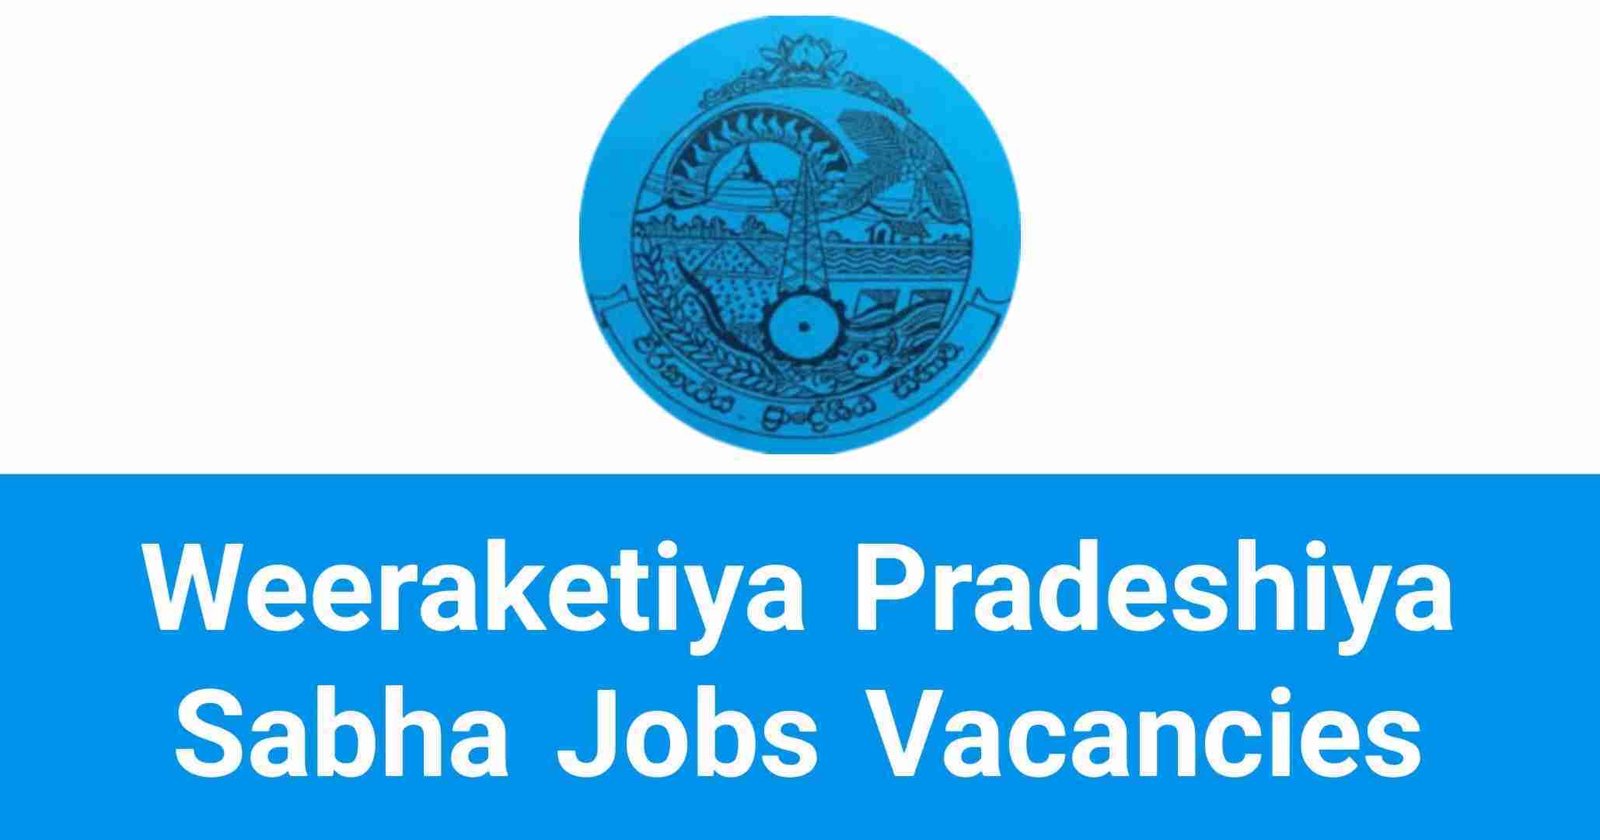 Weeraketiya Pradeshiya Sabha Jobs Vacancies